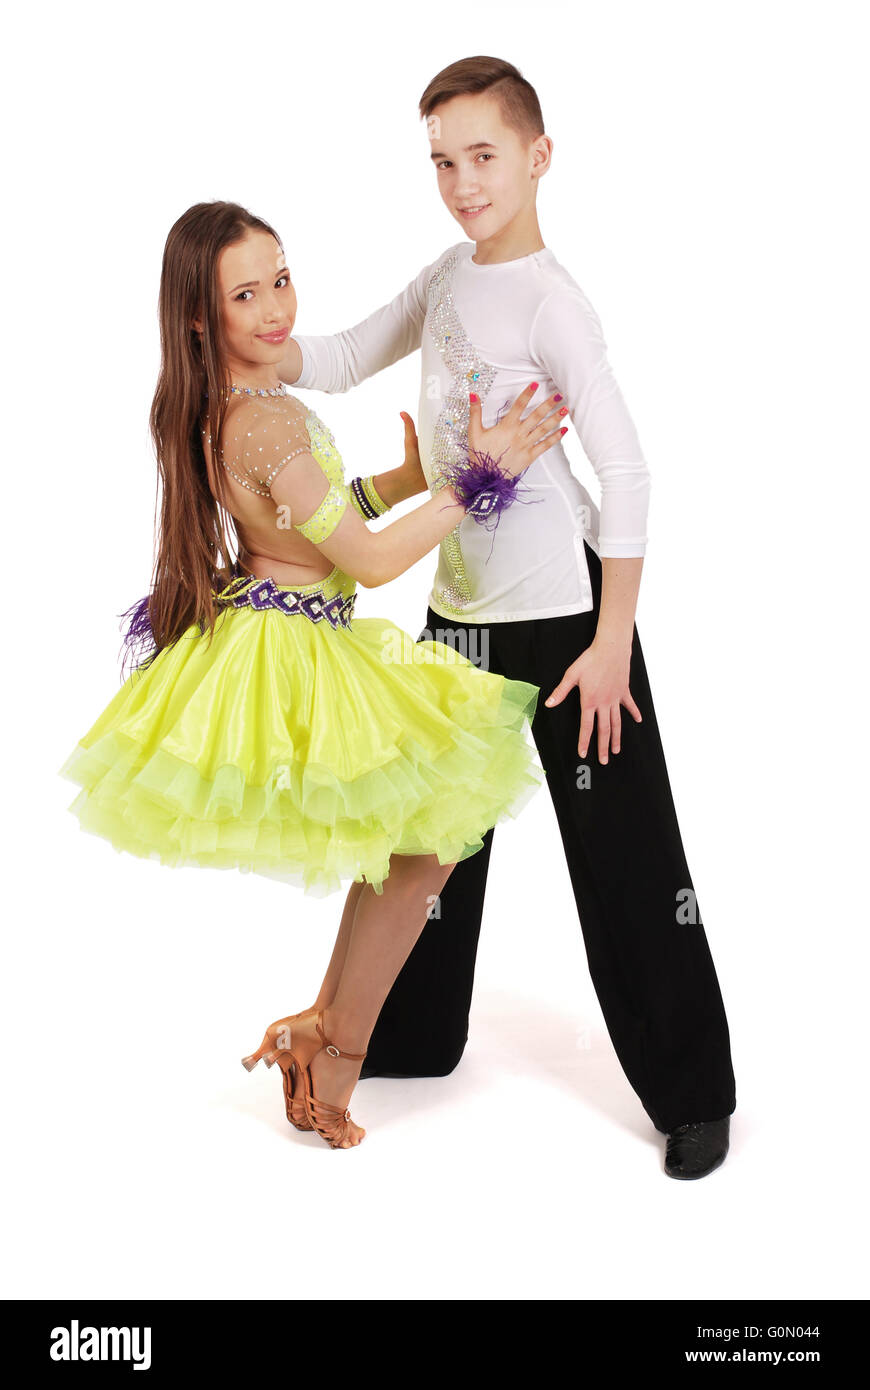 Garçon et fille danser La danse de salon sur fond blanc Banque D'Images